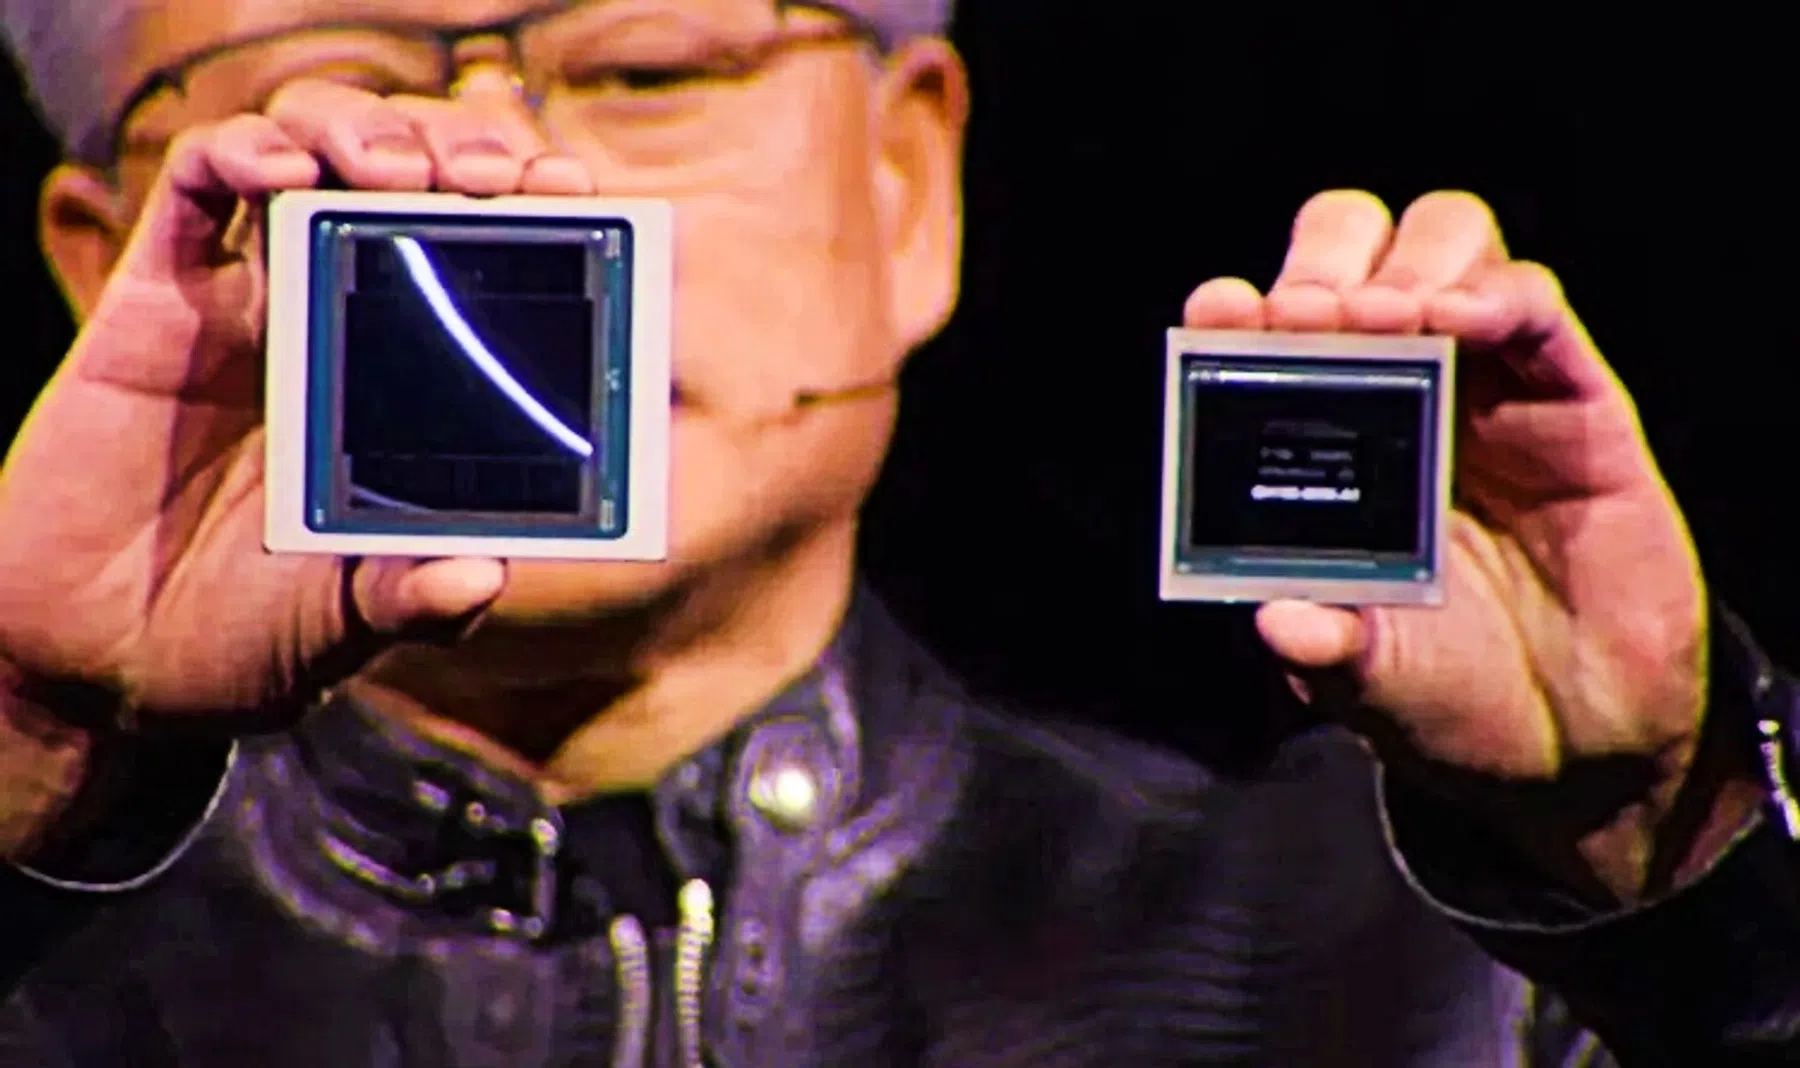 Deze nieuwe superchip van Nvidia is veel krachtiger én gebruikt minder energie